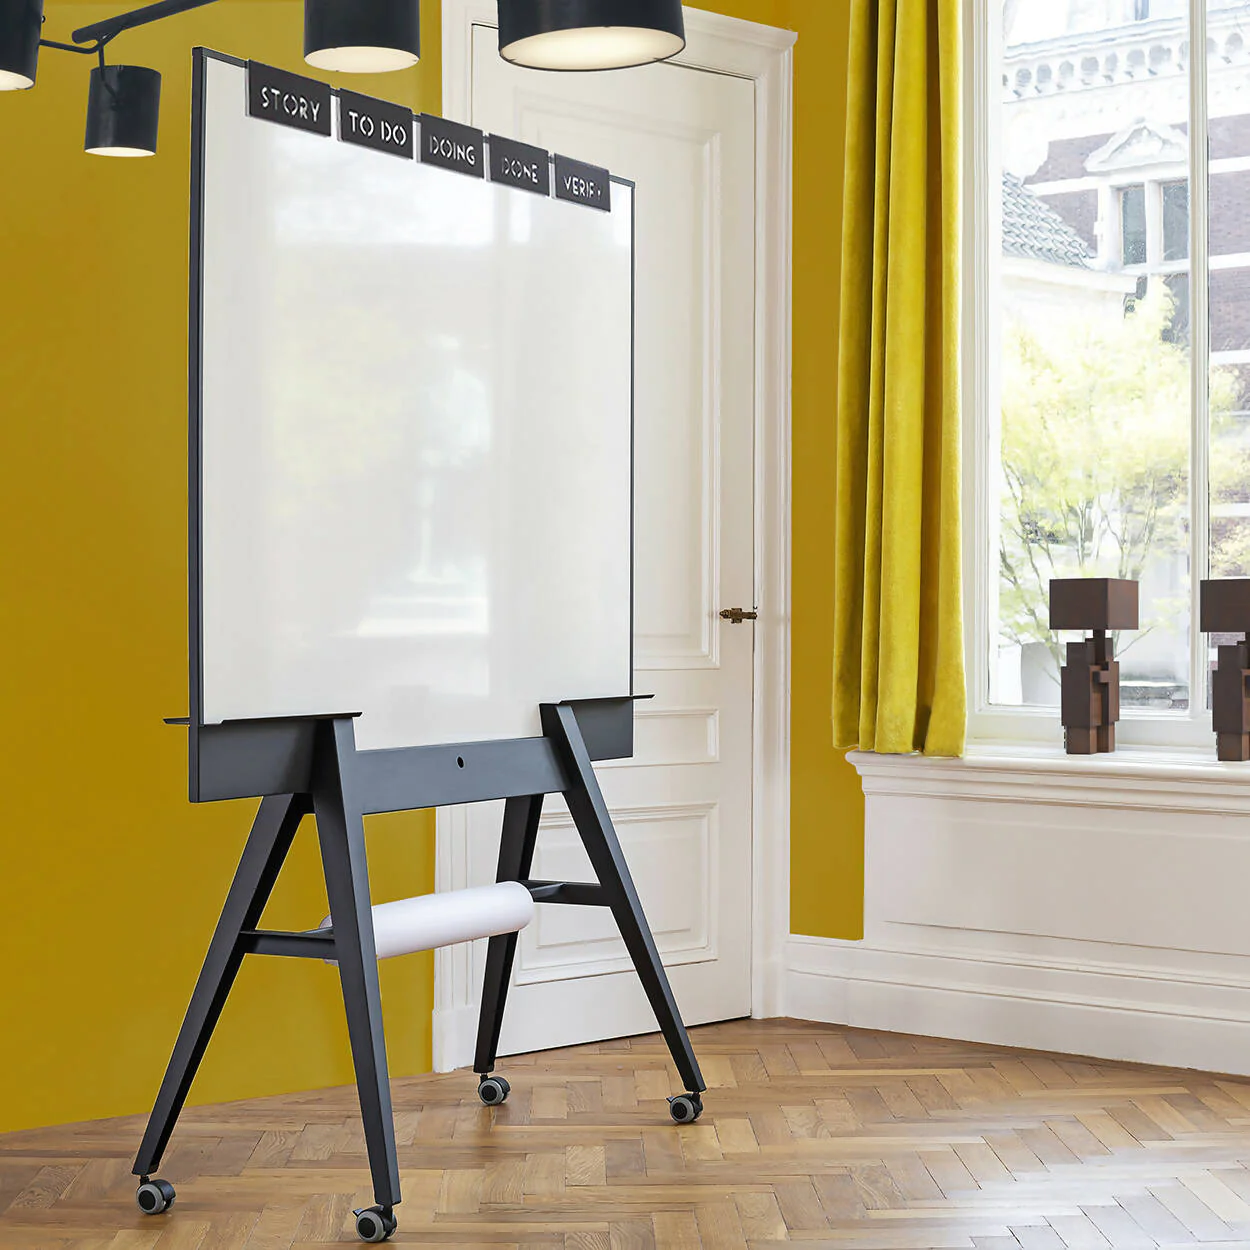 Design scrumboard een verrijdbaar dubbelzijdig magnetsich emaille whiteboard